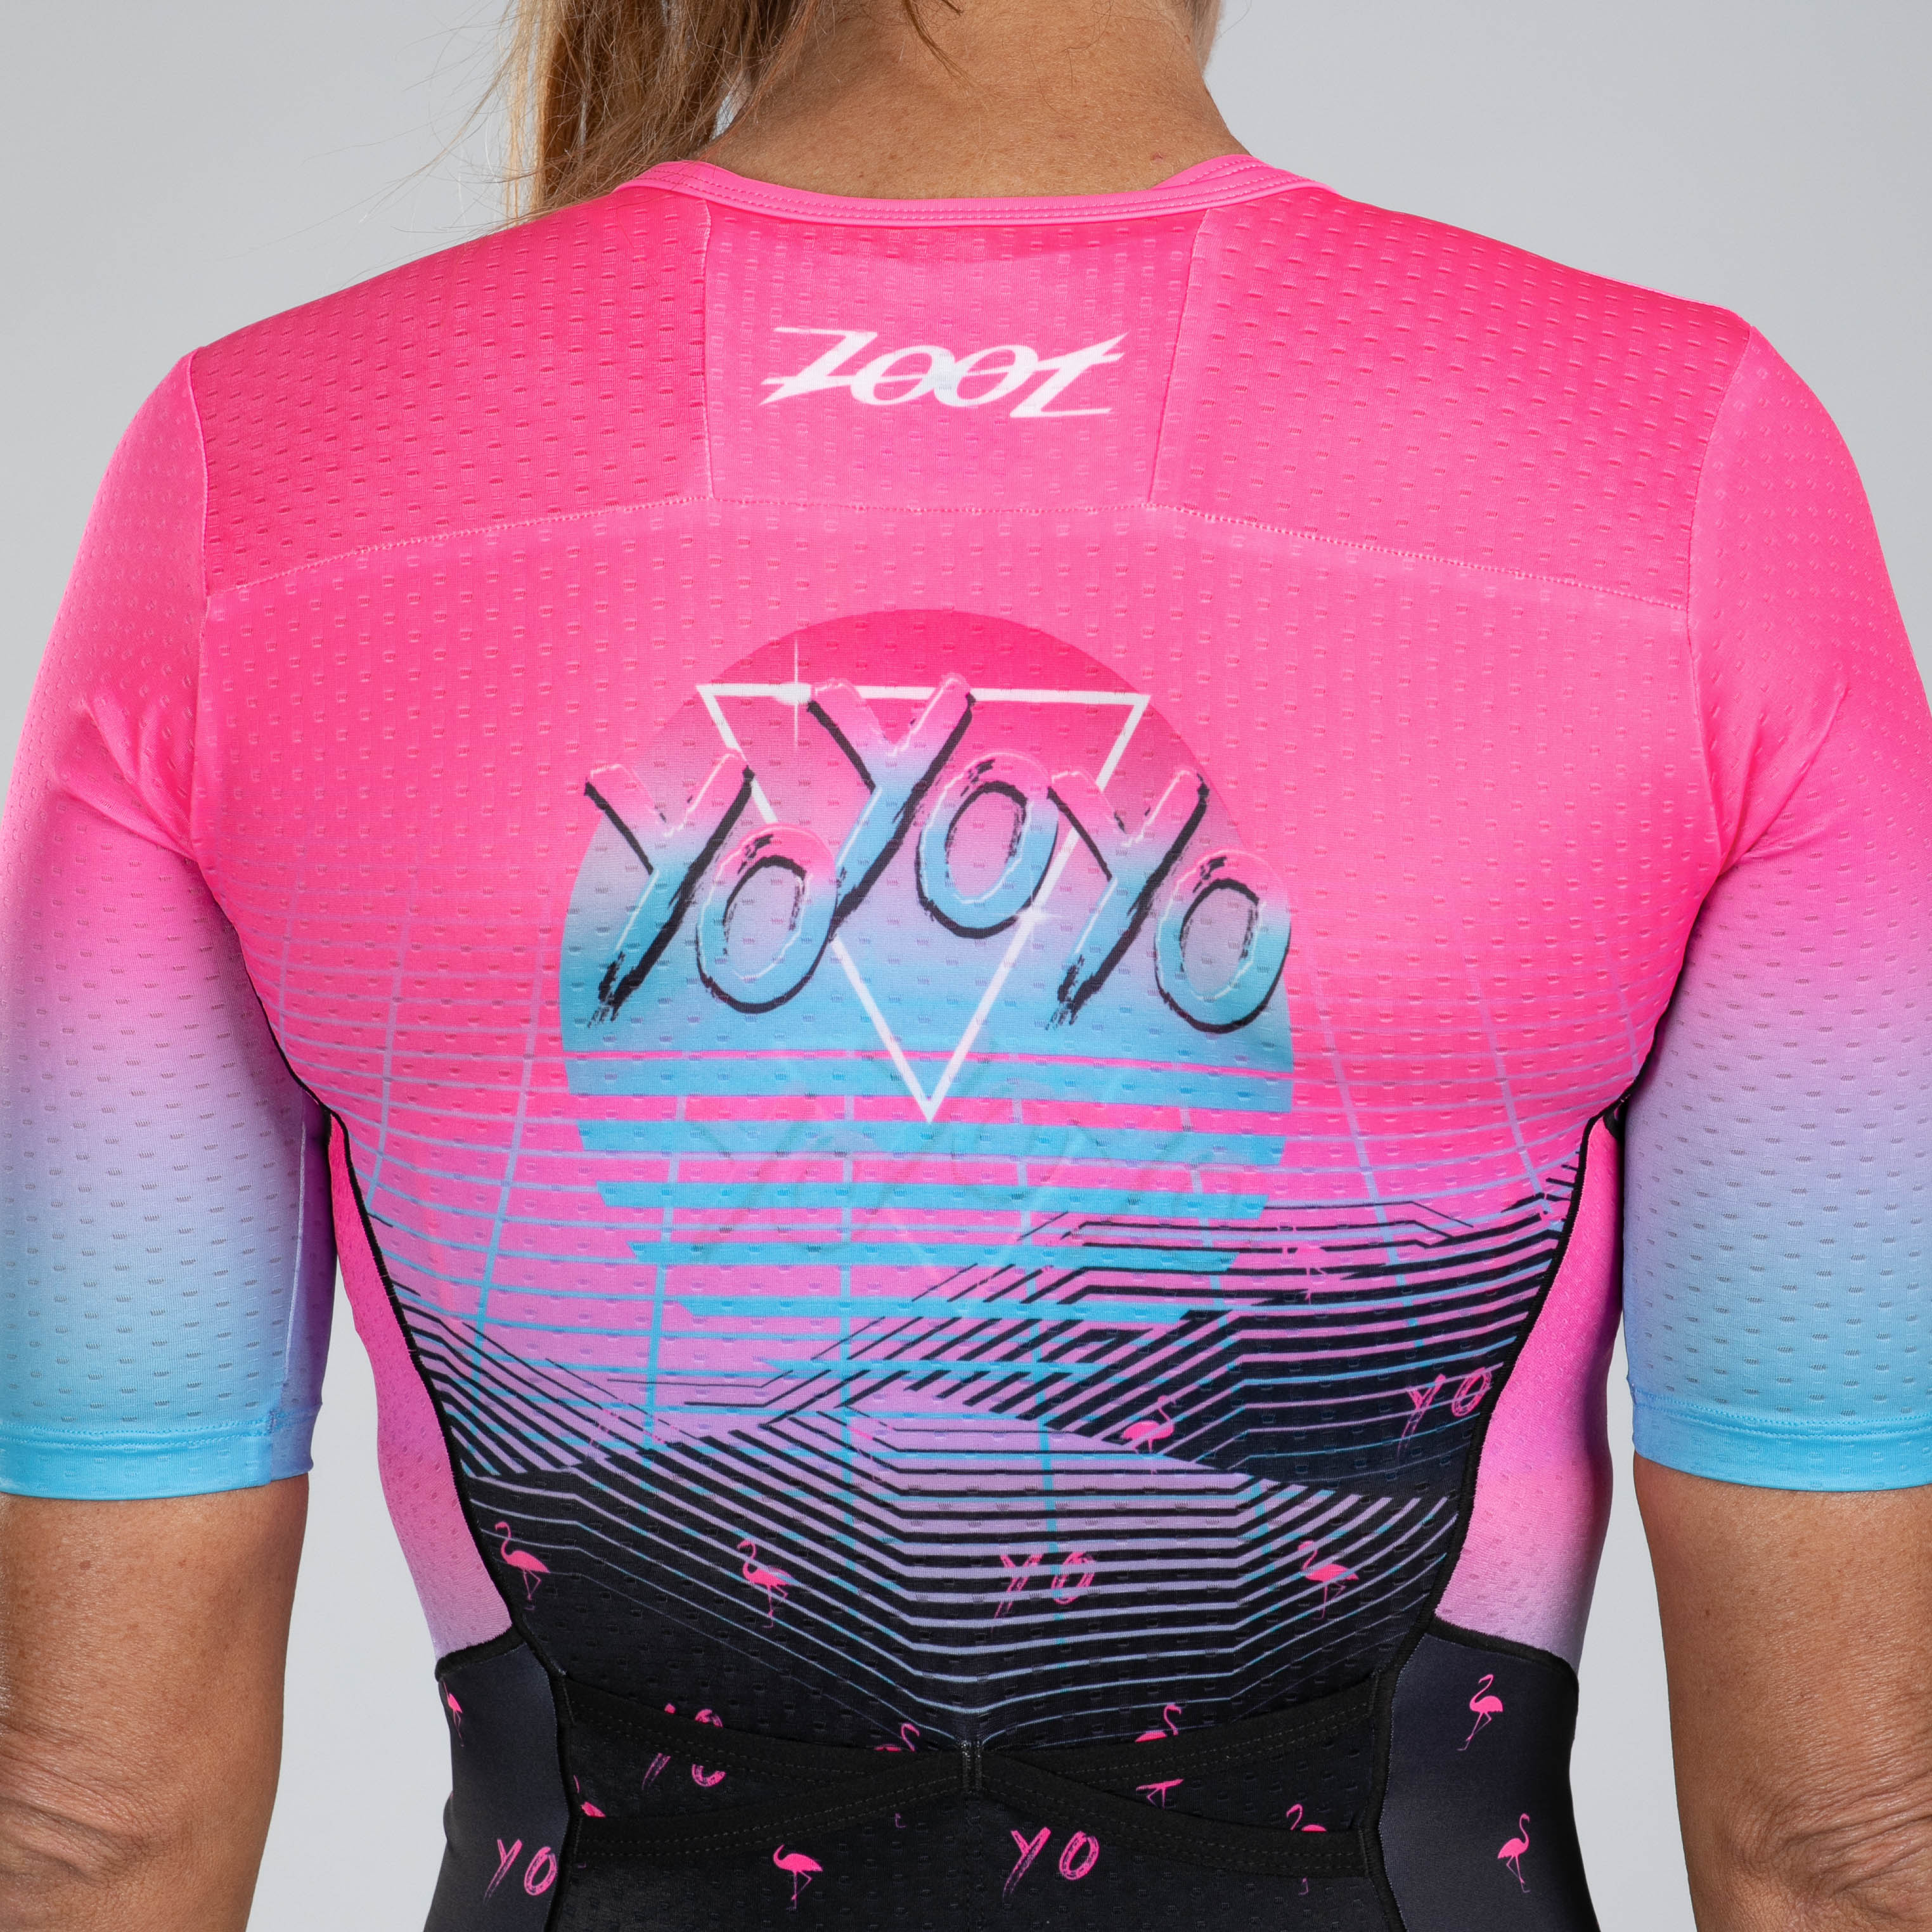 Zoot Sports TRI RACESUITS Women's Ltd Tri Aero Fz Racesuit - Vice